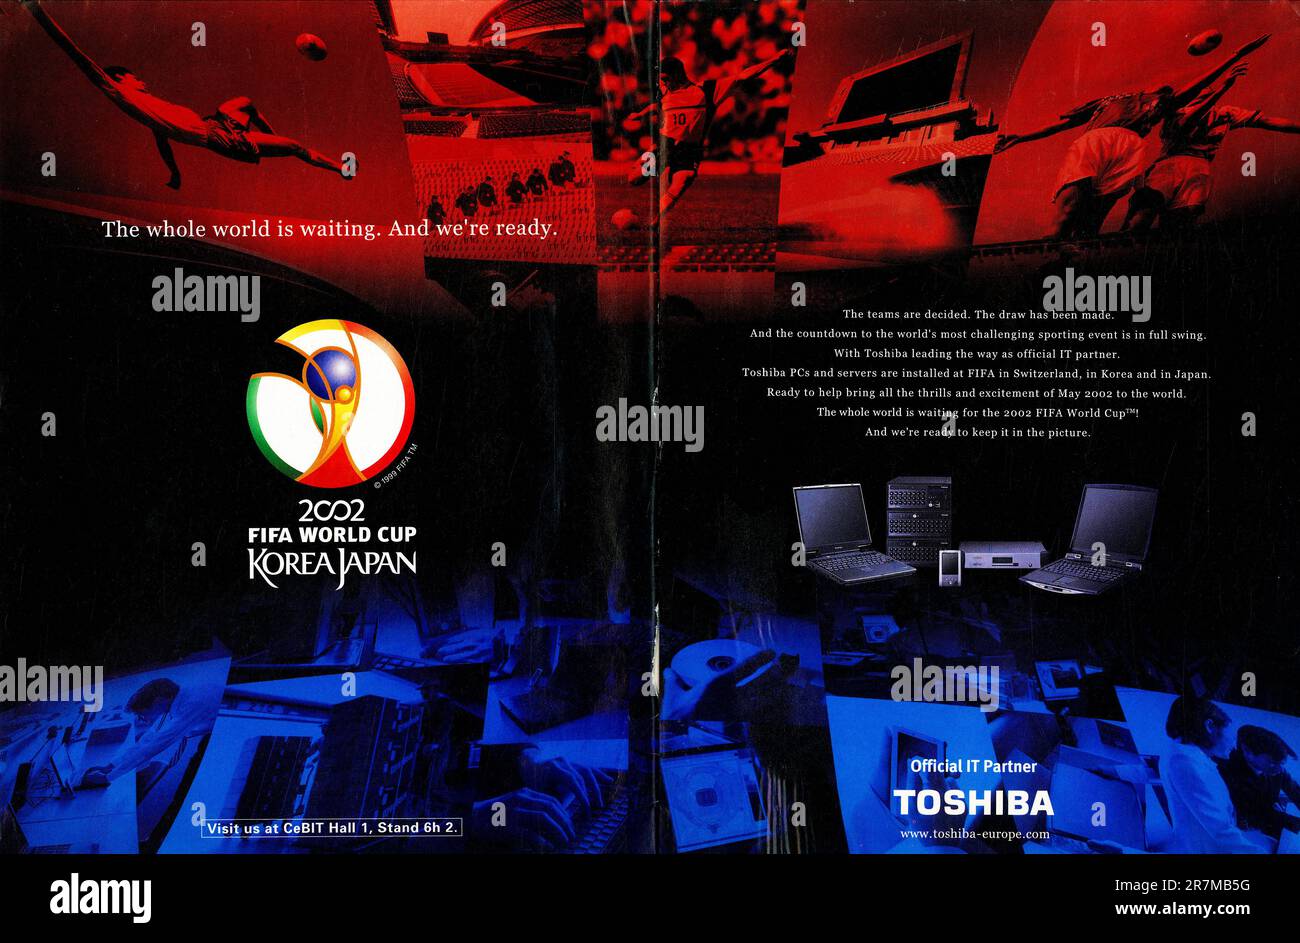 Toshiba partenaire informatique officiel de la coupe du monde FIFA Corée Japon 2002 annonce dans un magazine 2002 Banque D'Images